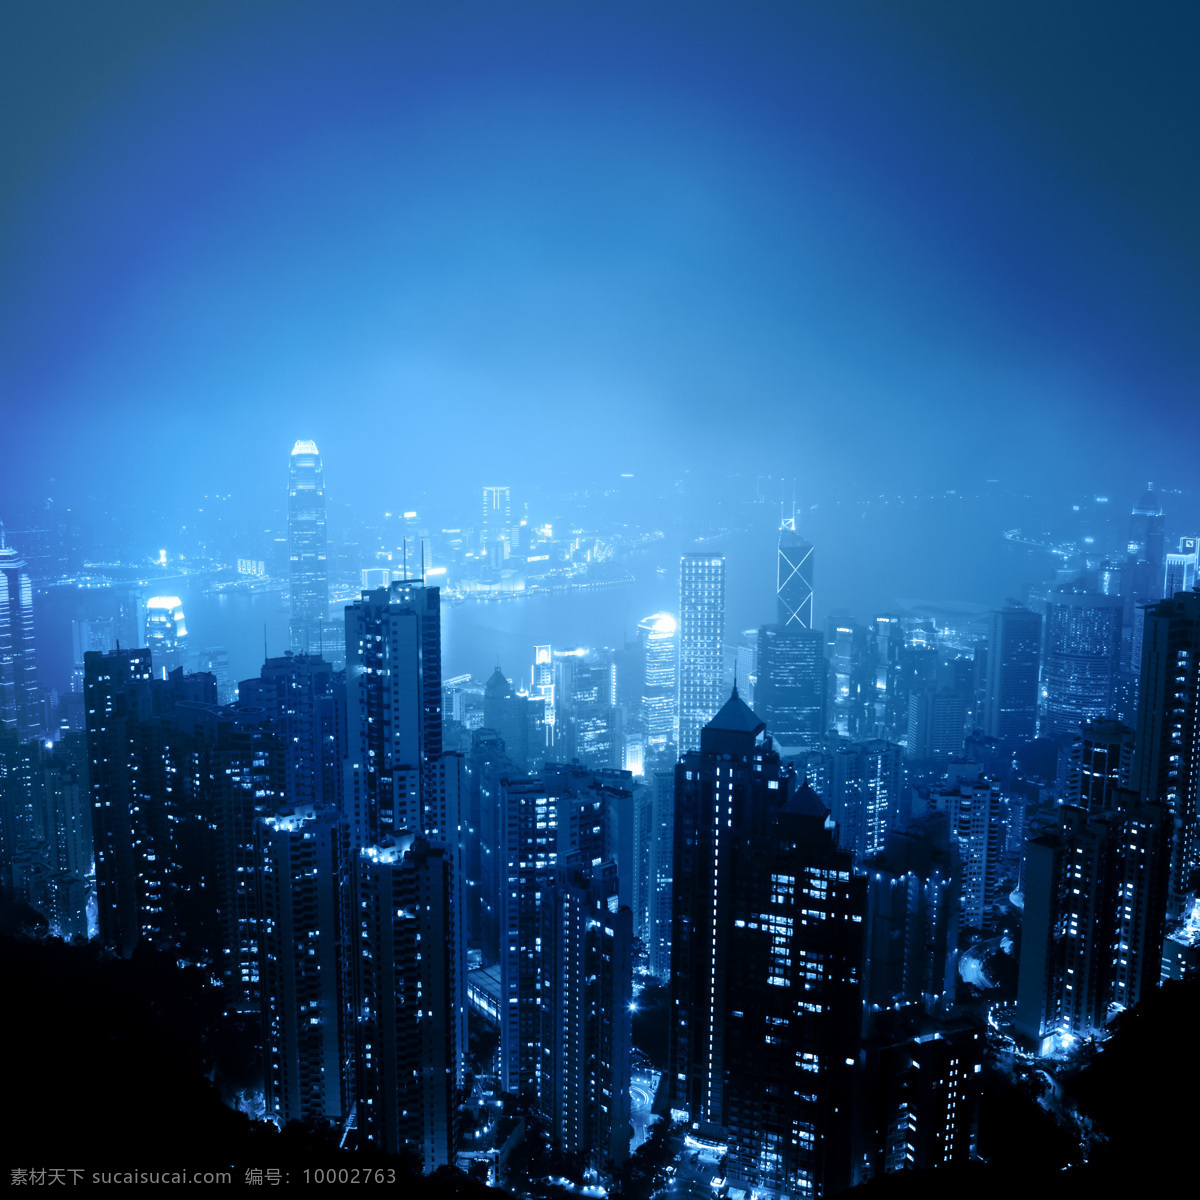 香港 夜景 鸟瞰 香港夜景 城市夜景 美丽城市风景 繁华都市 高楼大厦 城市风光 环境家居